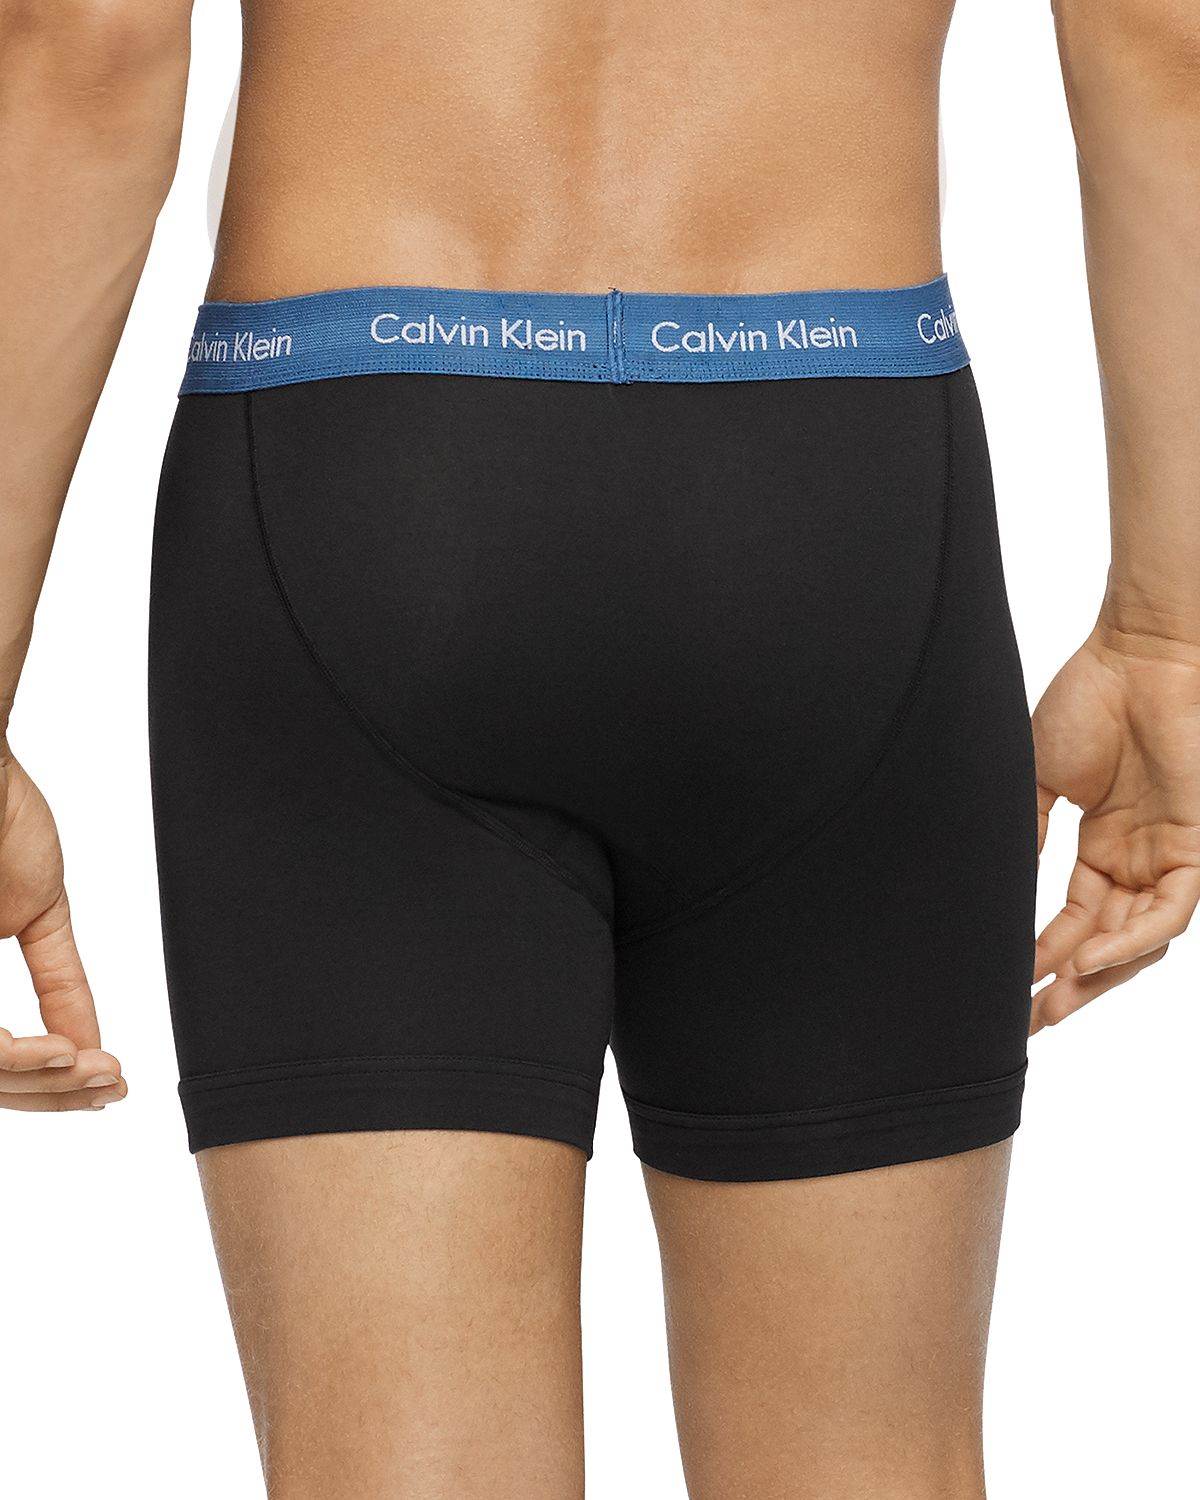 Calvin klein underwear cotton stretch boxer brief 3 pack nu2666